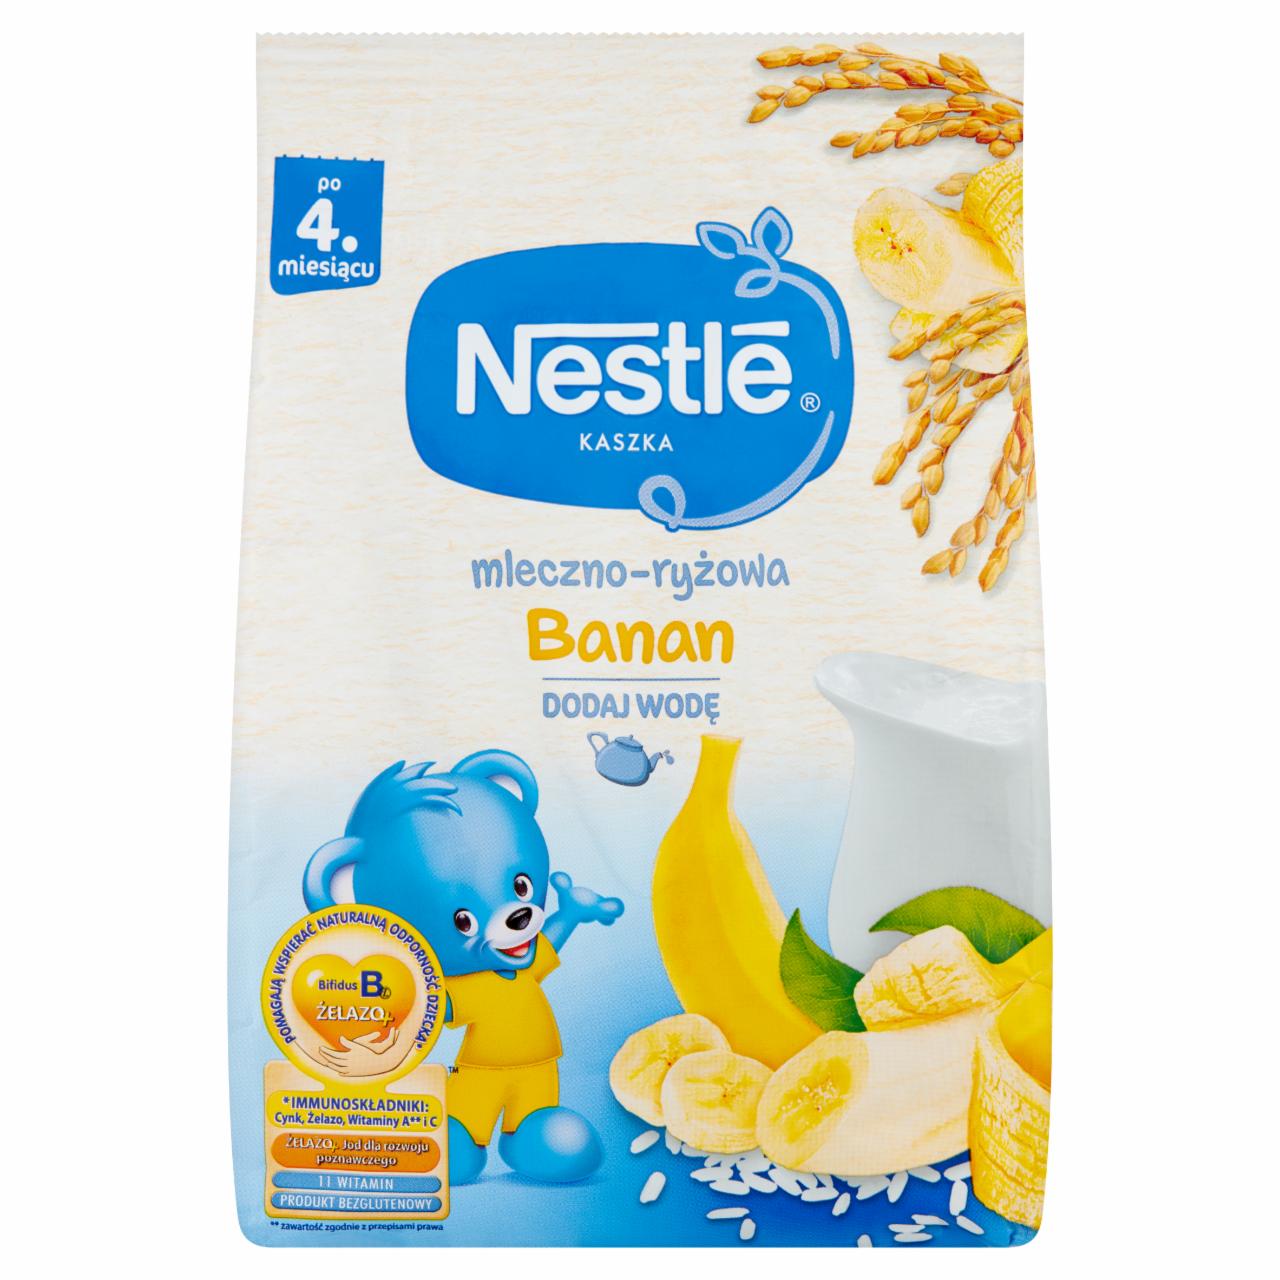 Zdjęcia - Nestlé Kaszka mleczno-ryżowa banan dla niemowląt po 4. miesiącu 230 g